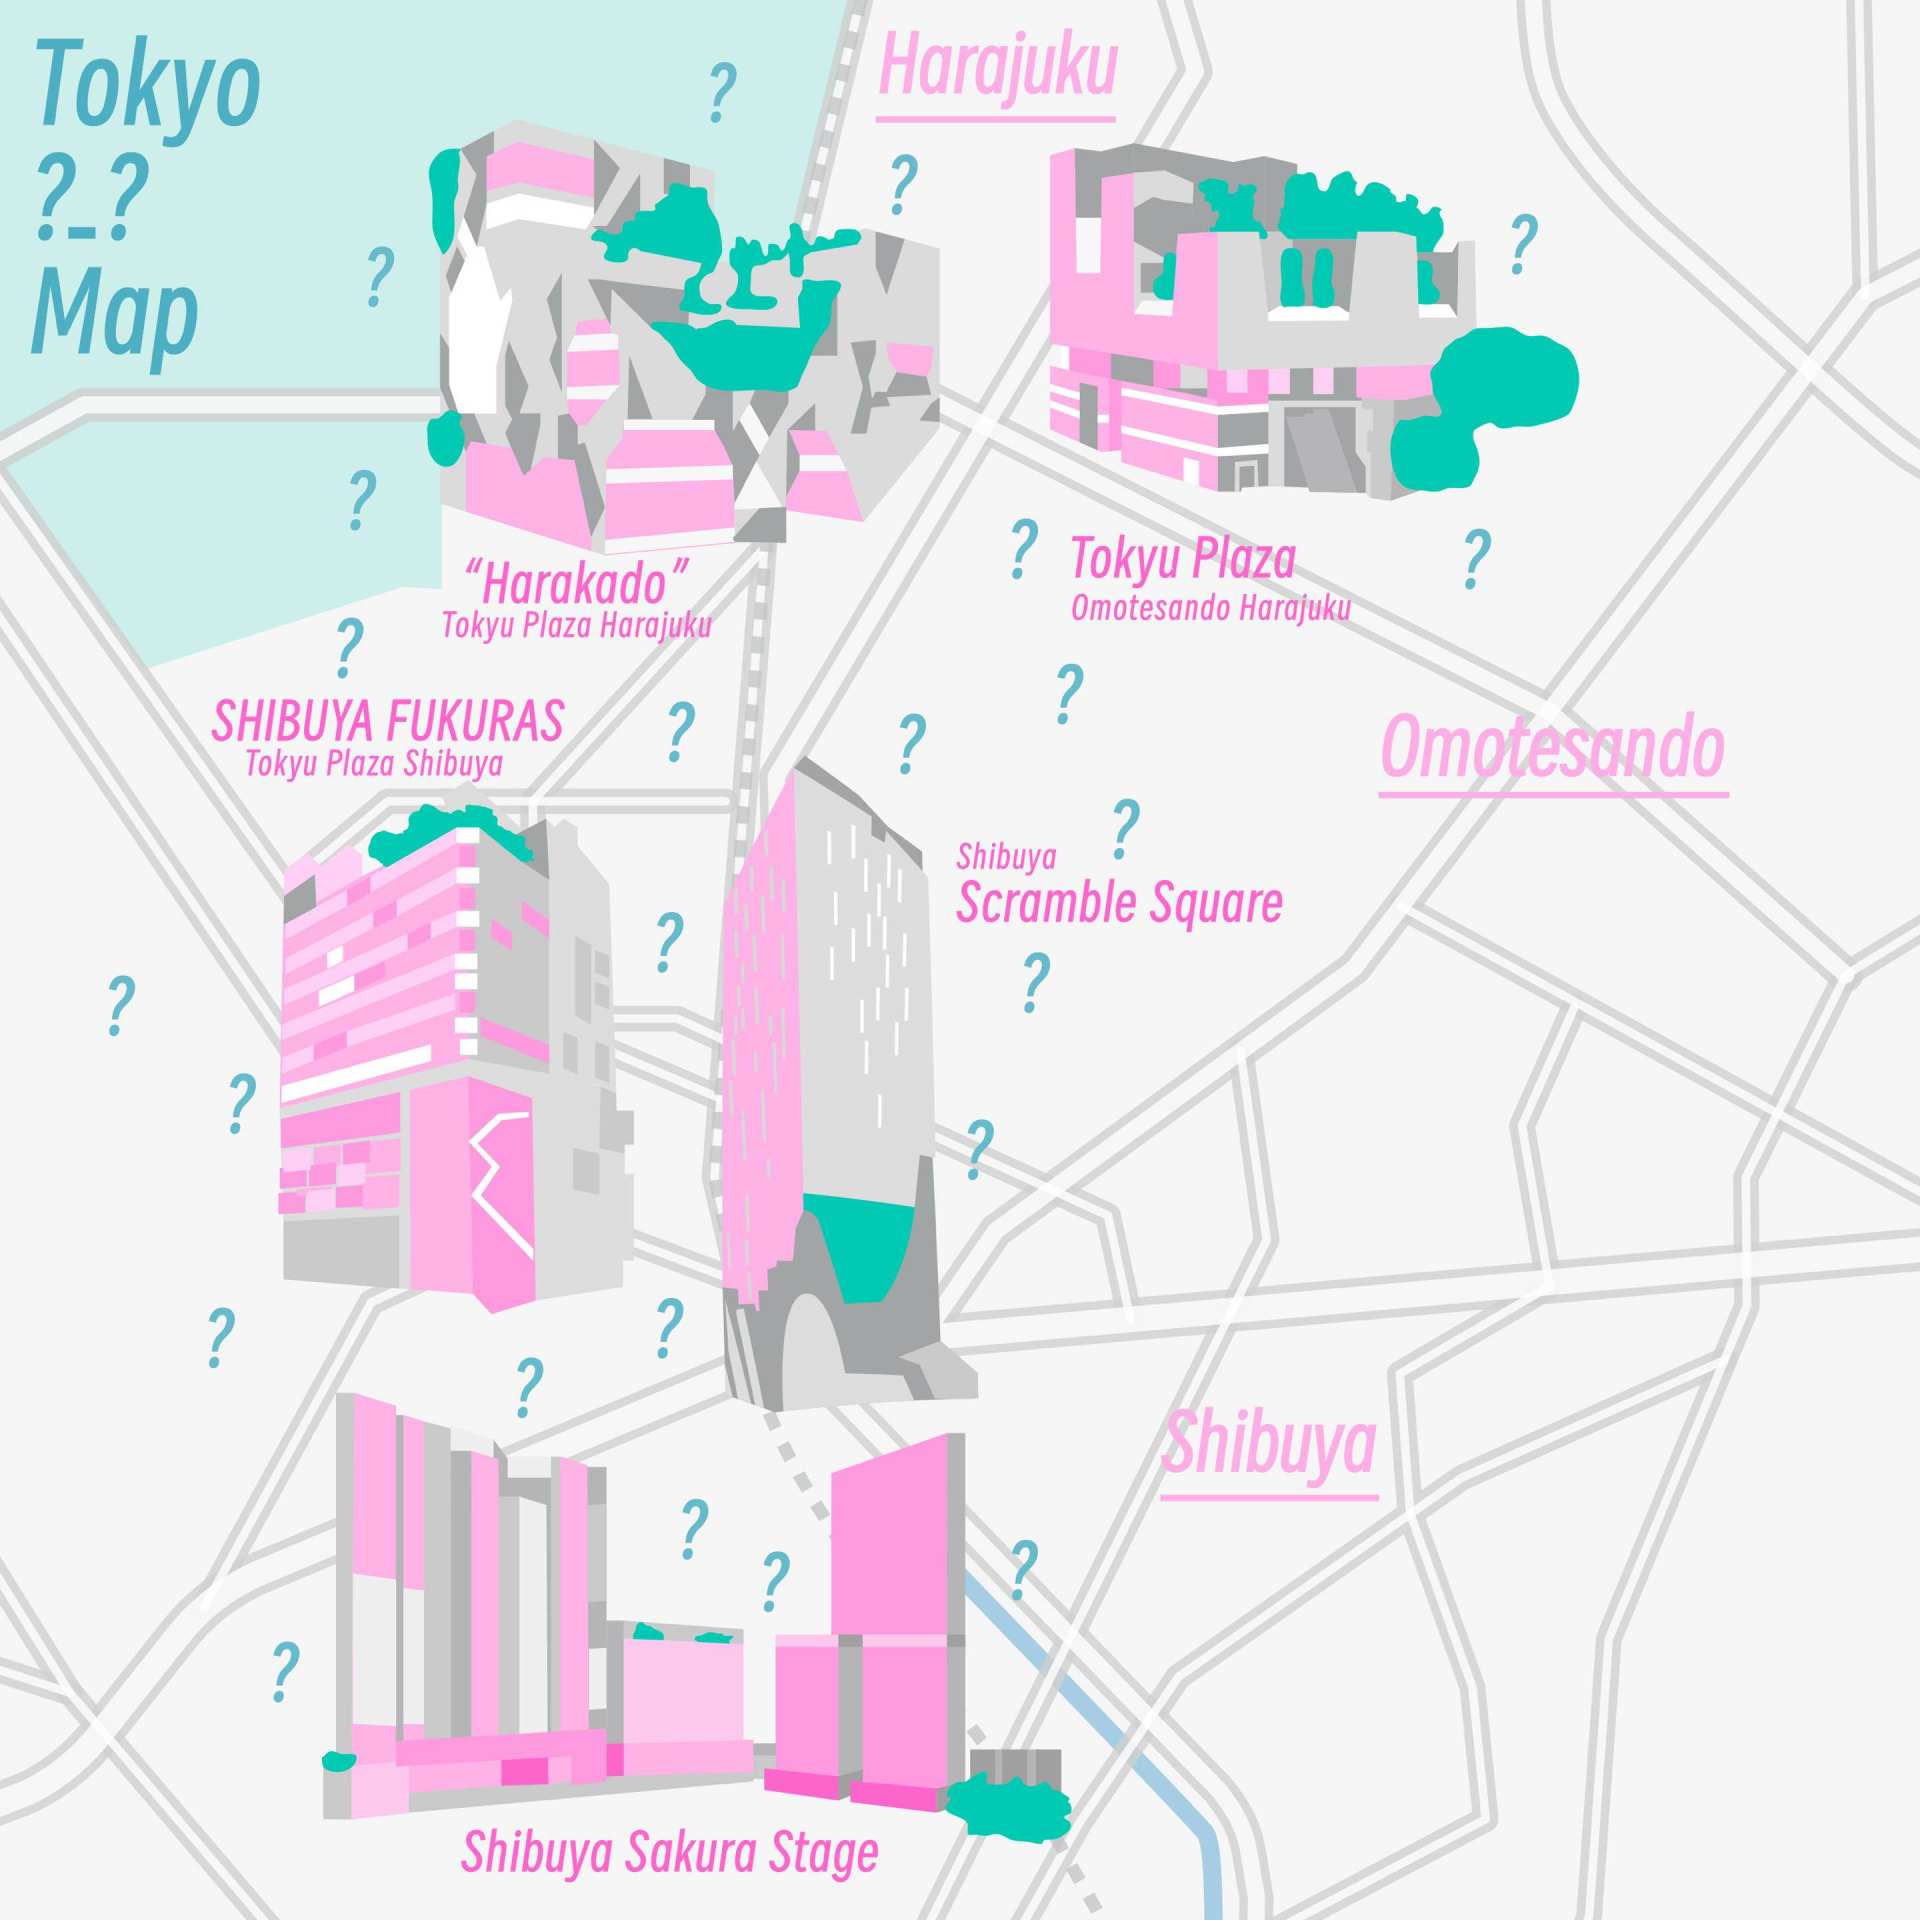 东京最丑且难逛的商场在哪里？